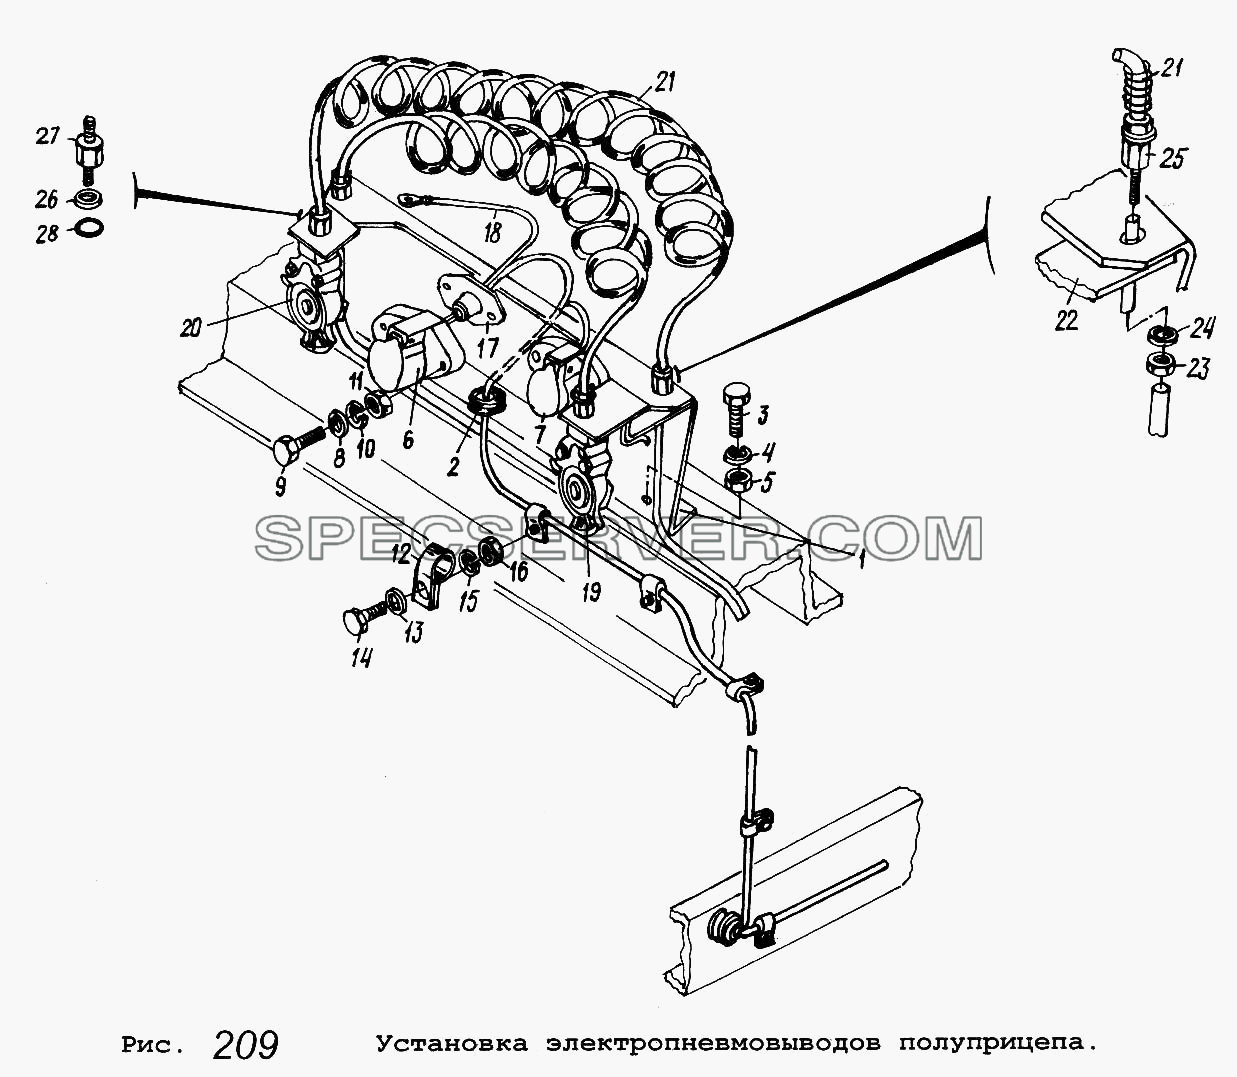 Установка электропневмовыводов полуприцепа для МАЗ-53371 (список запасных частей)